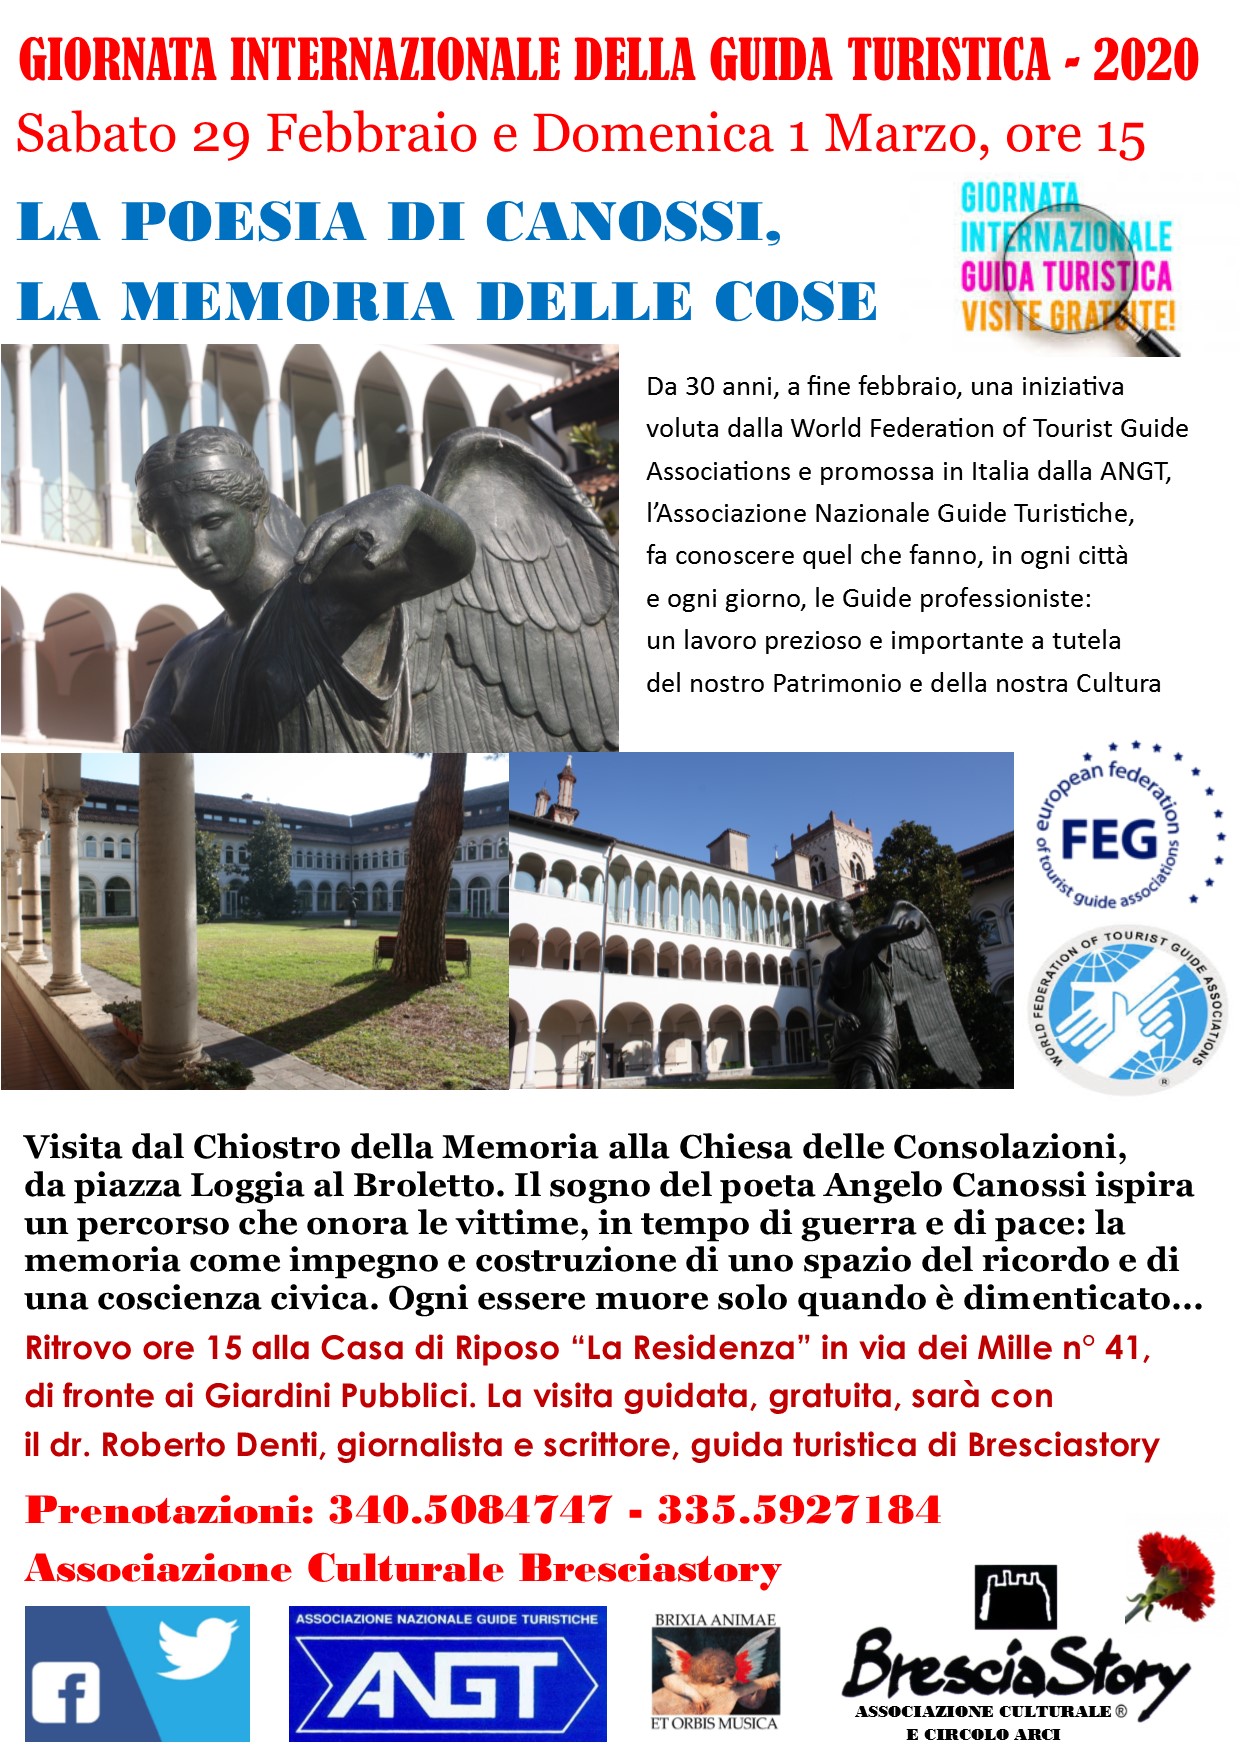 Giornata_della_Guida_Turistica_2020